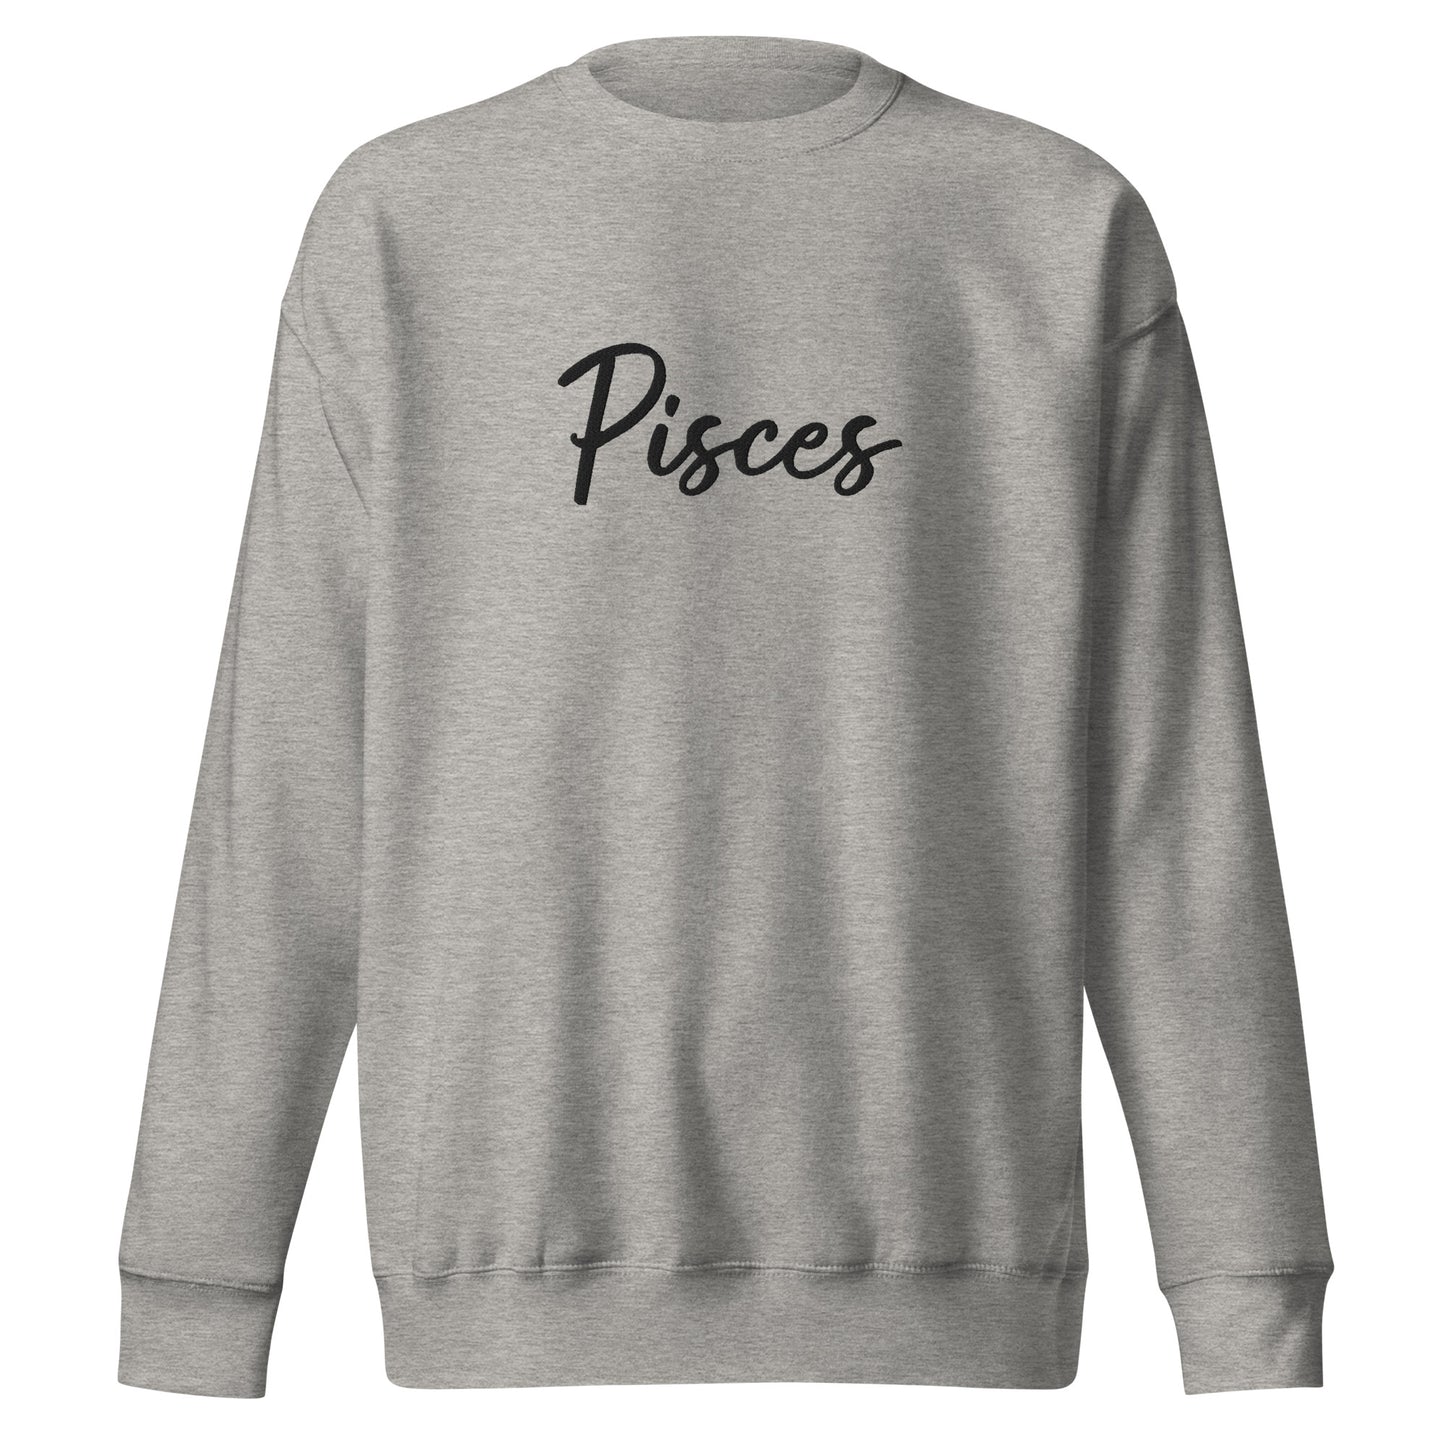 Unisex Pisces Sweatshirt